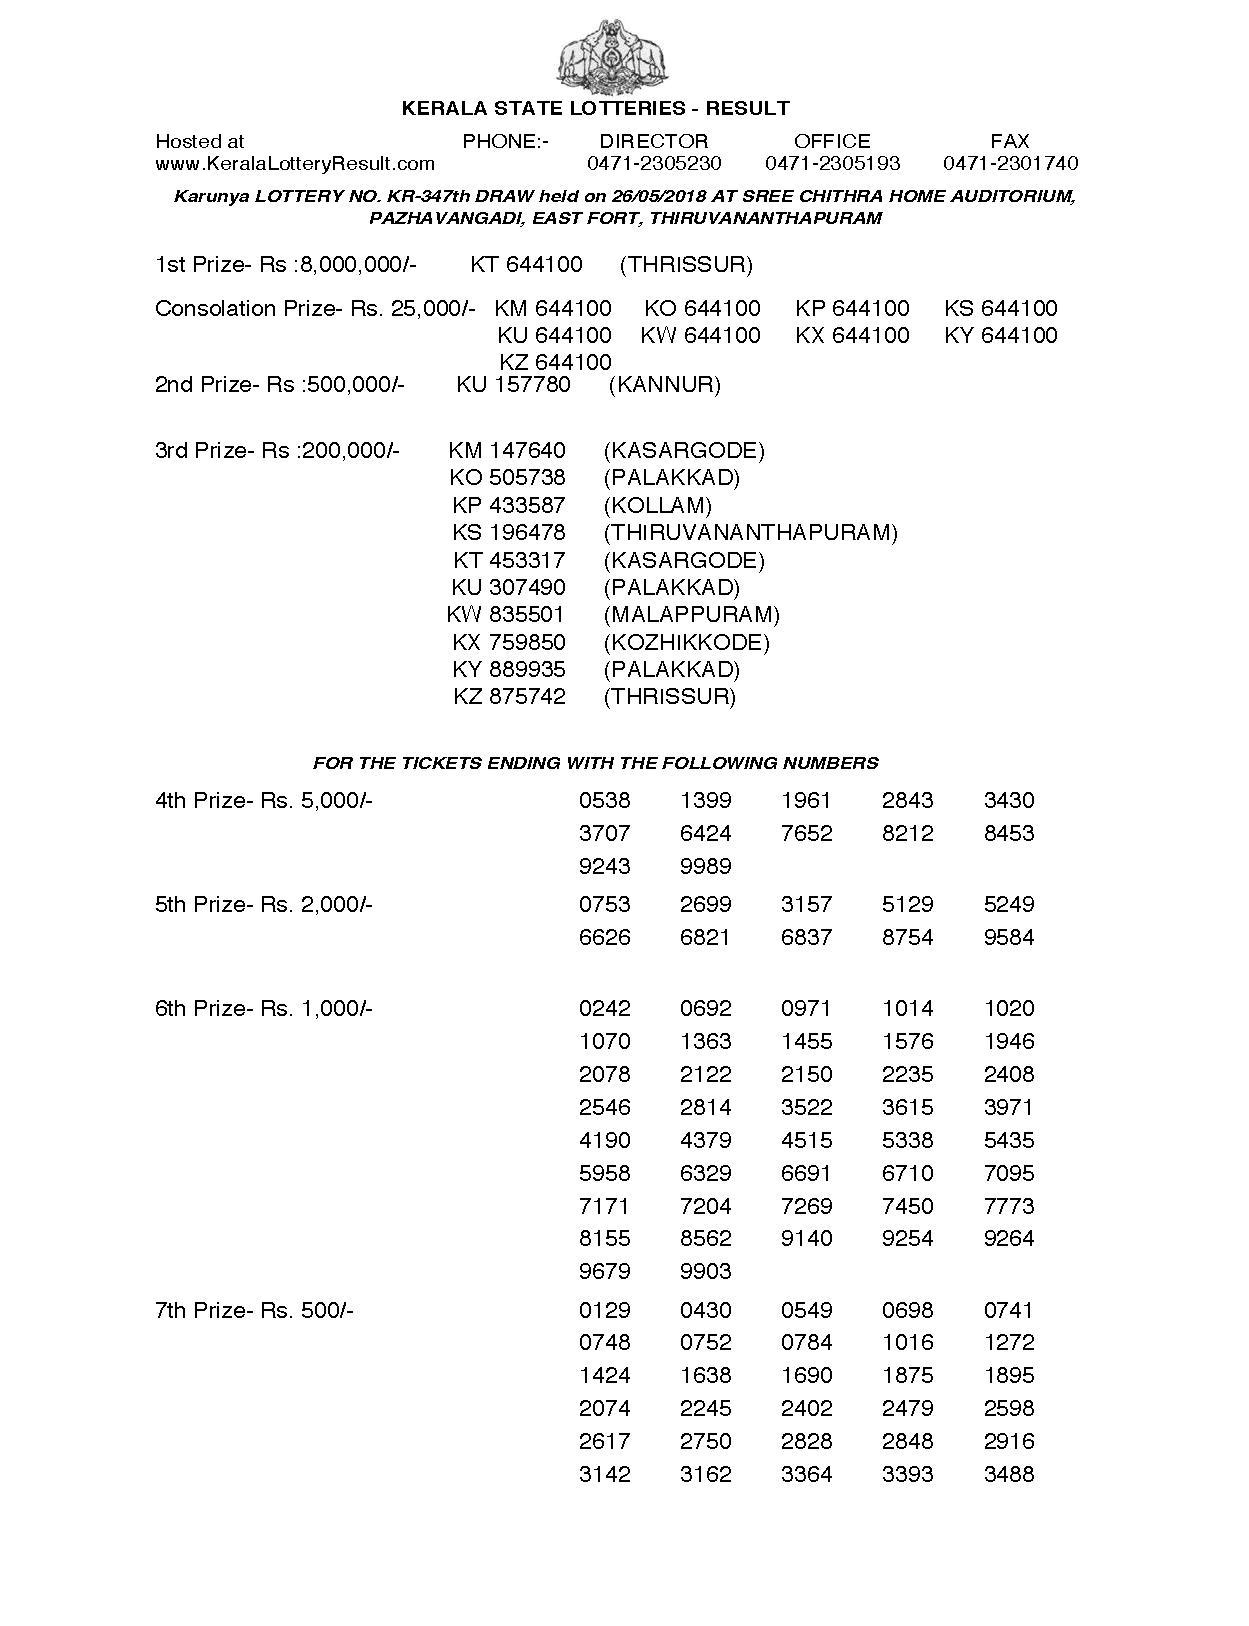 Karunya KR347 Kerala Lottery Results Screenshot: Page 1